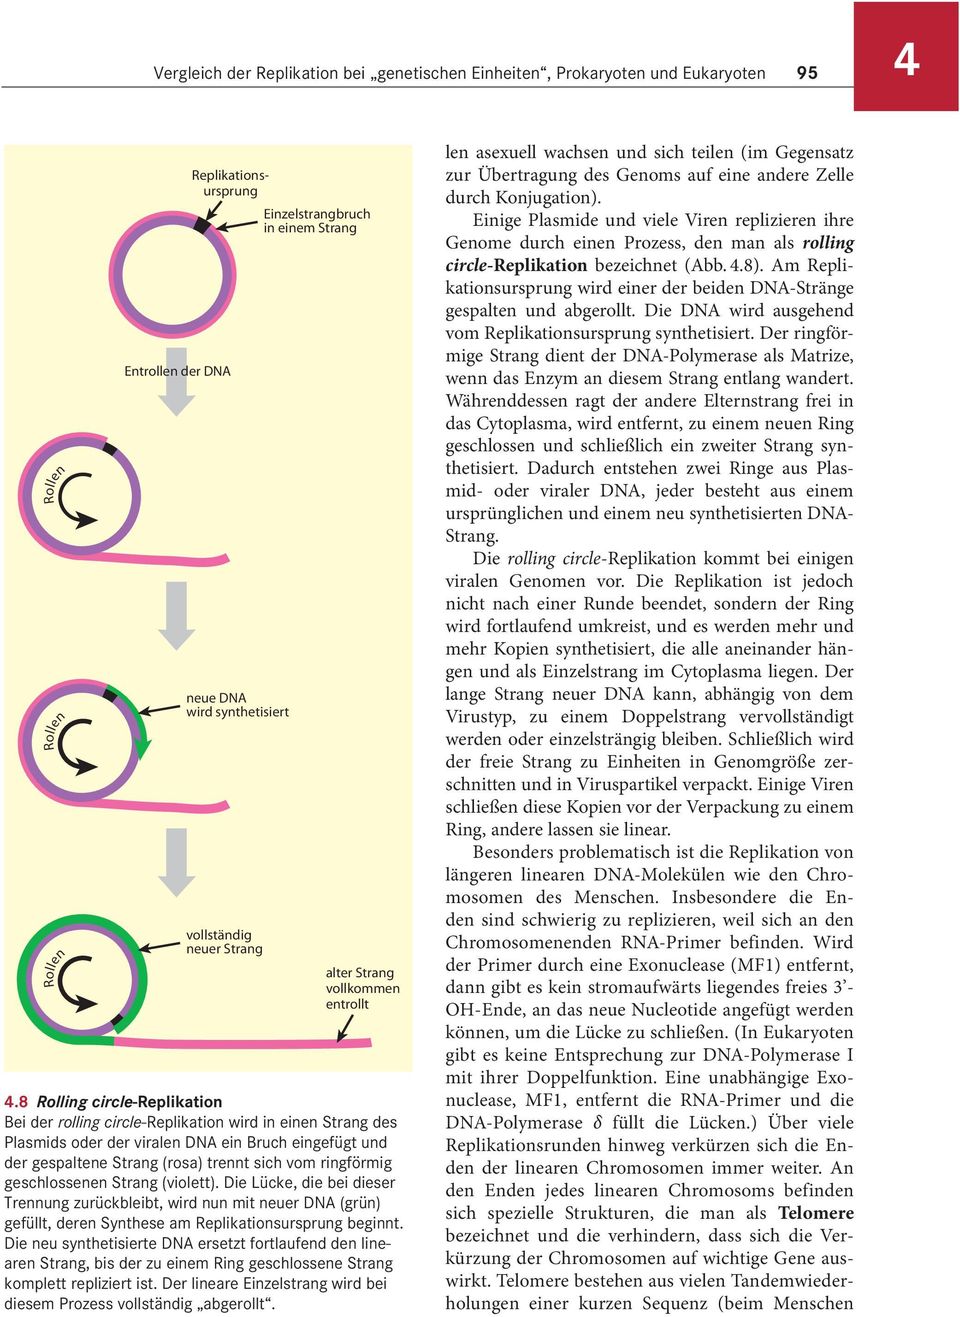 8 Rolling circle-replikation Bei der rolling circle-replikation wird in einen Strang des Plasmids oder der viralen DNA ein Bruch eingefügt und der gespaltene Strang (rosa) trennt sich vom ringförmig